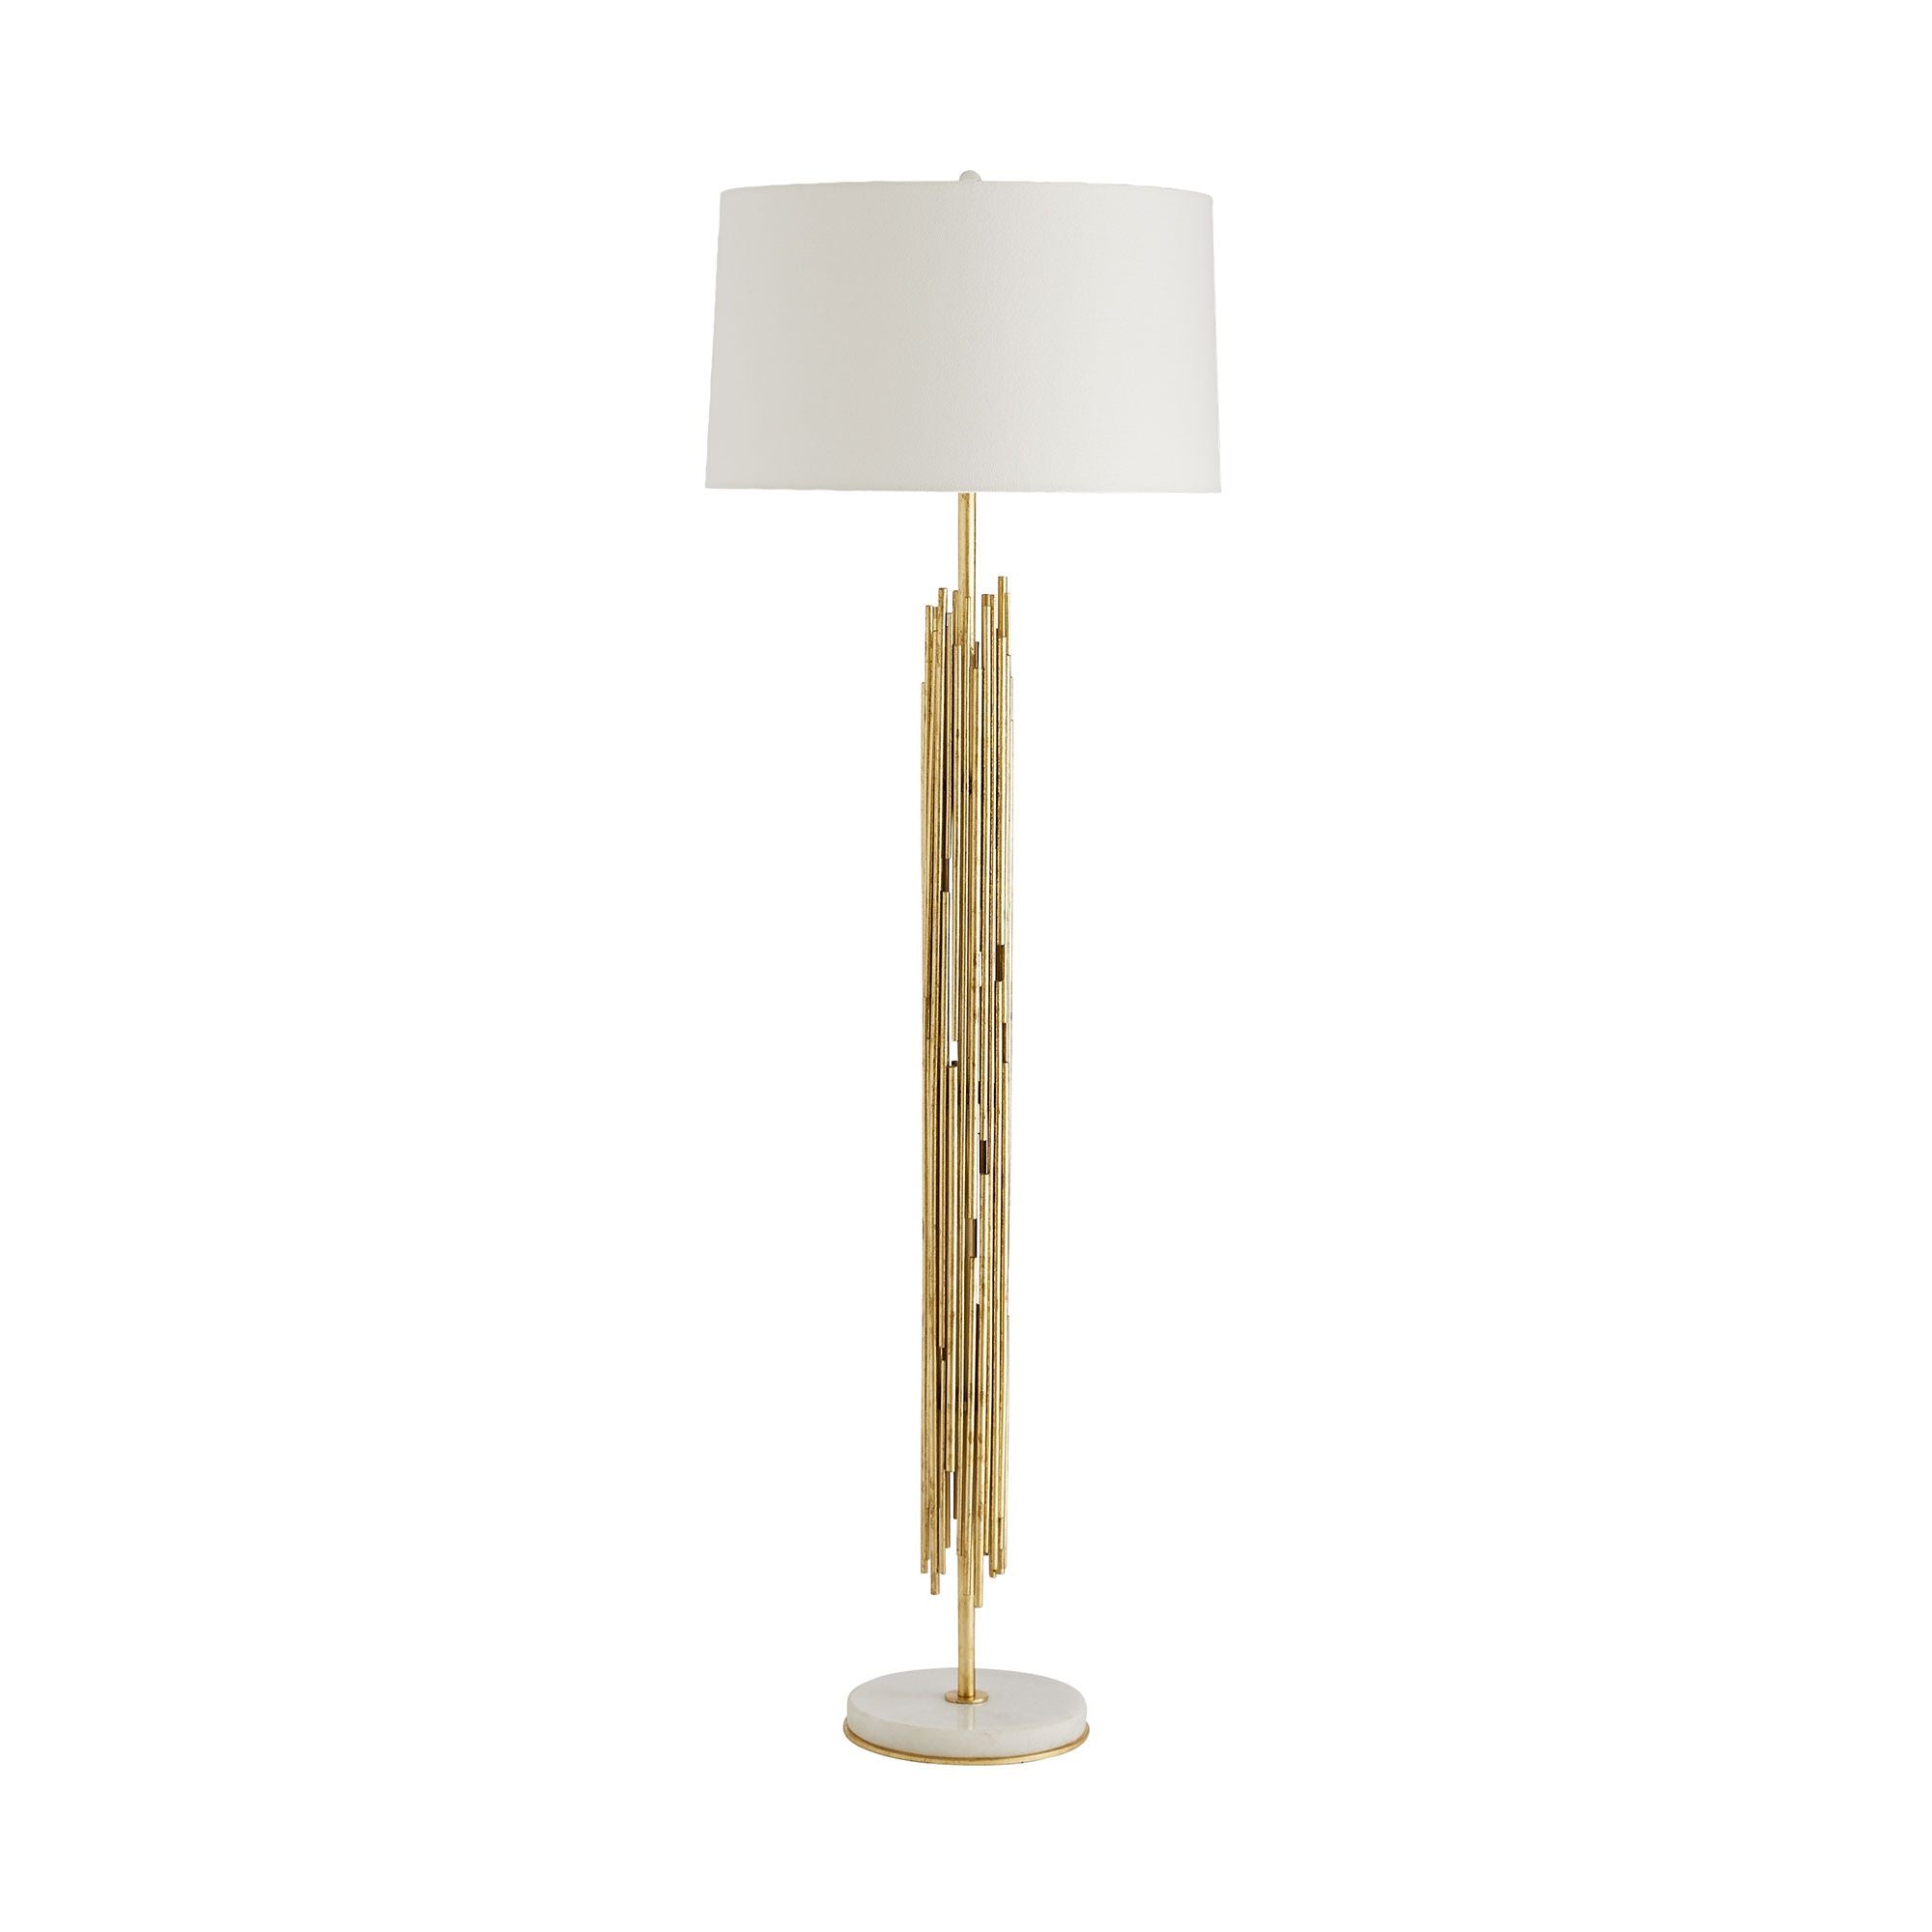 Floor lamp Gold - 76007-421 | ARTERIORS